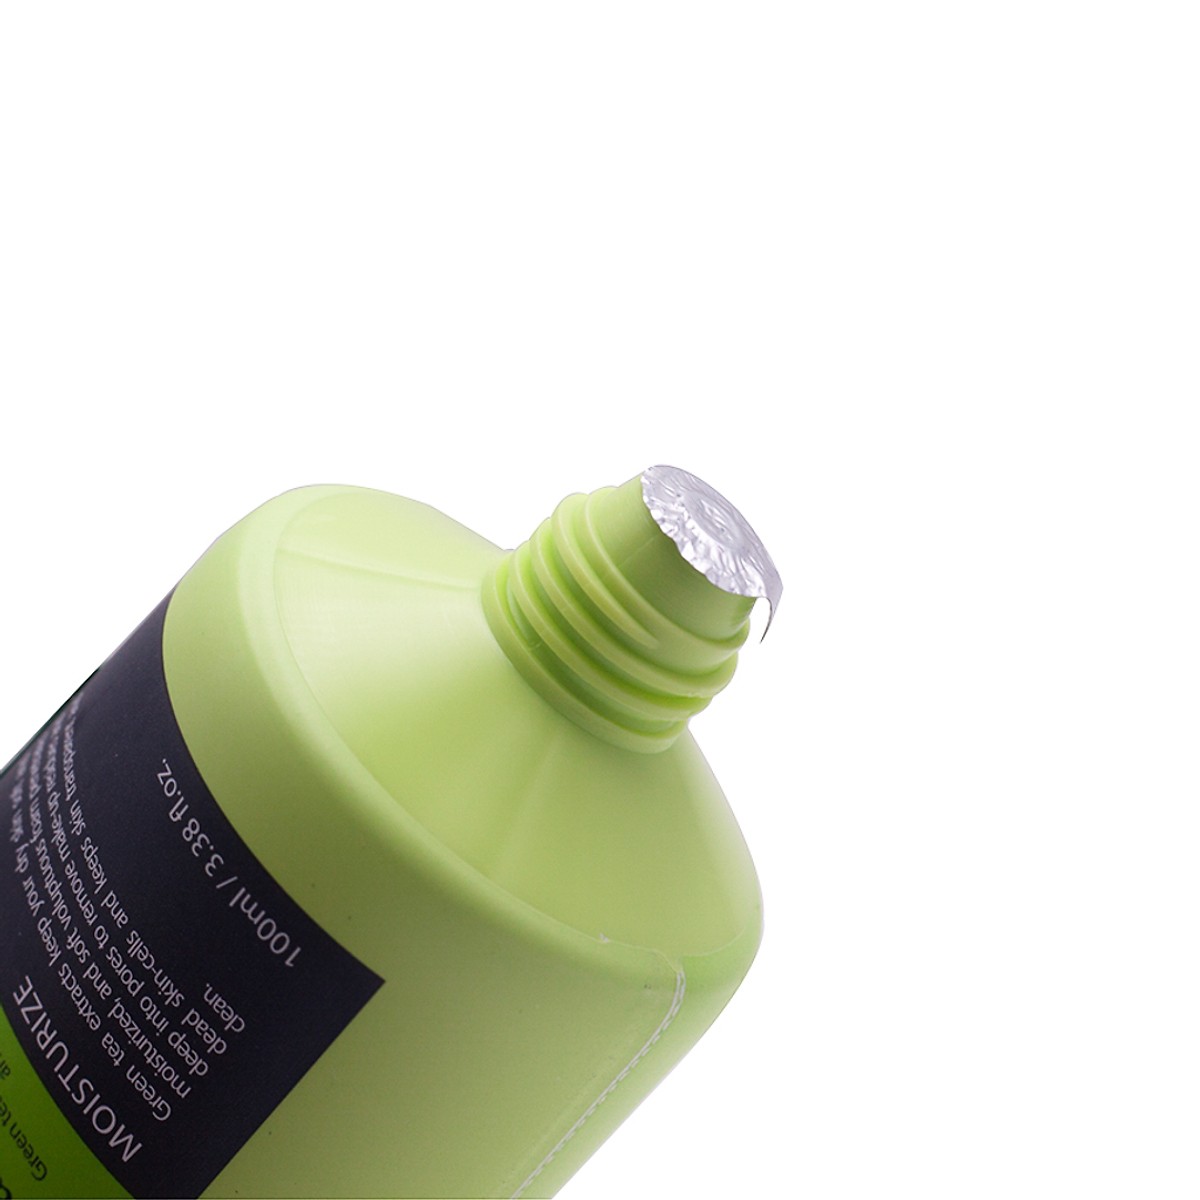 Sữa Rửa Mặt Tinh Chất Trà Xanh sạch nhờn ngừa mụn Benew Green Tea Foam Cleansing Hàn Quốc (100ml) – Hàng Chính Hãng